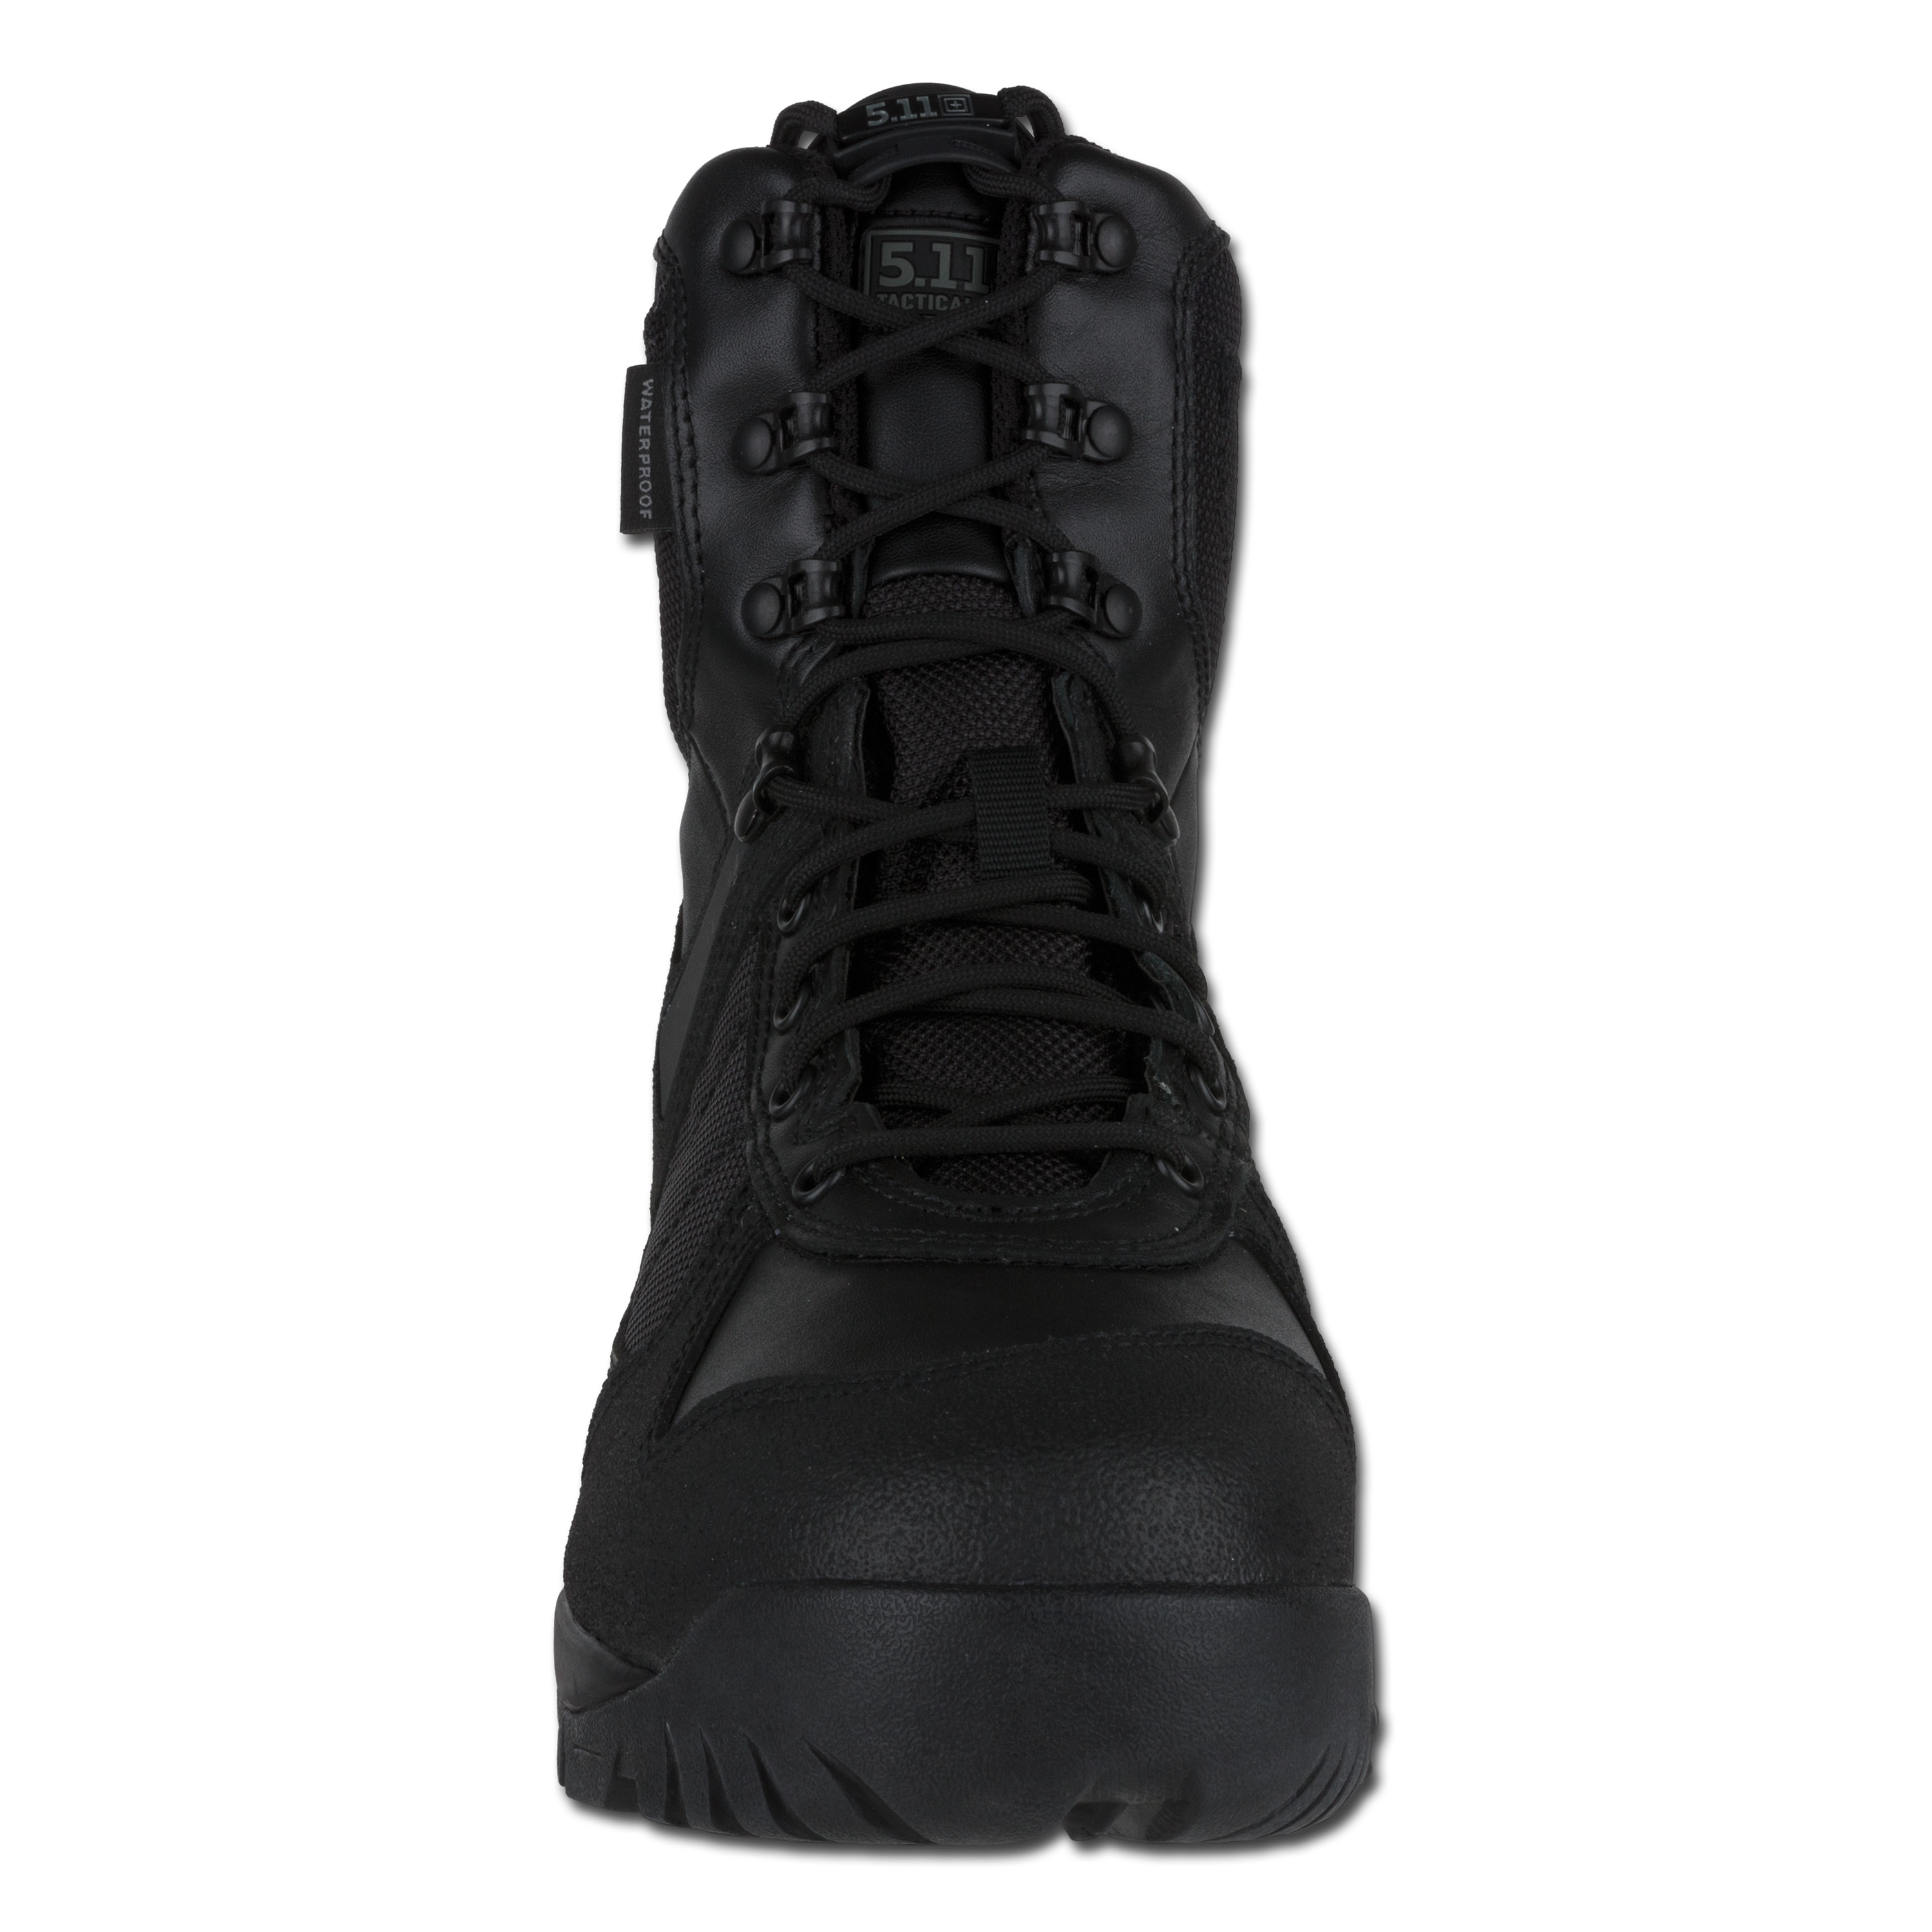 5.11 XPRT Tactical Boots black | 5.11 XPRT Tactical Boots black ...